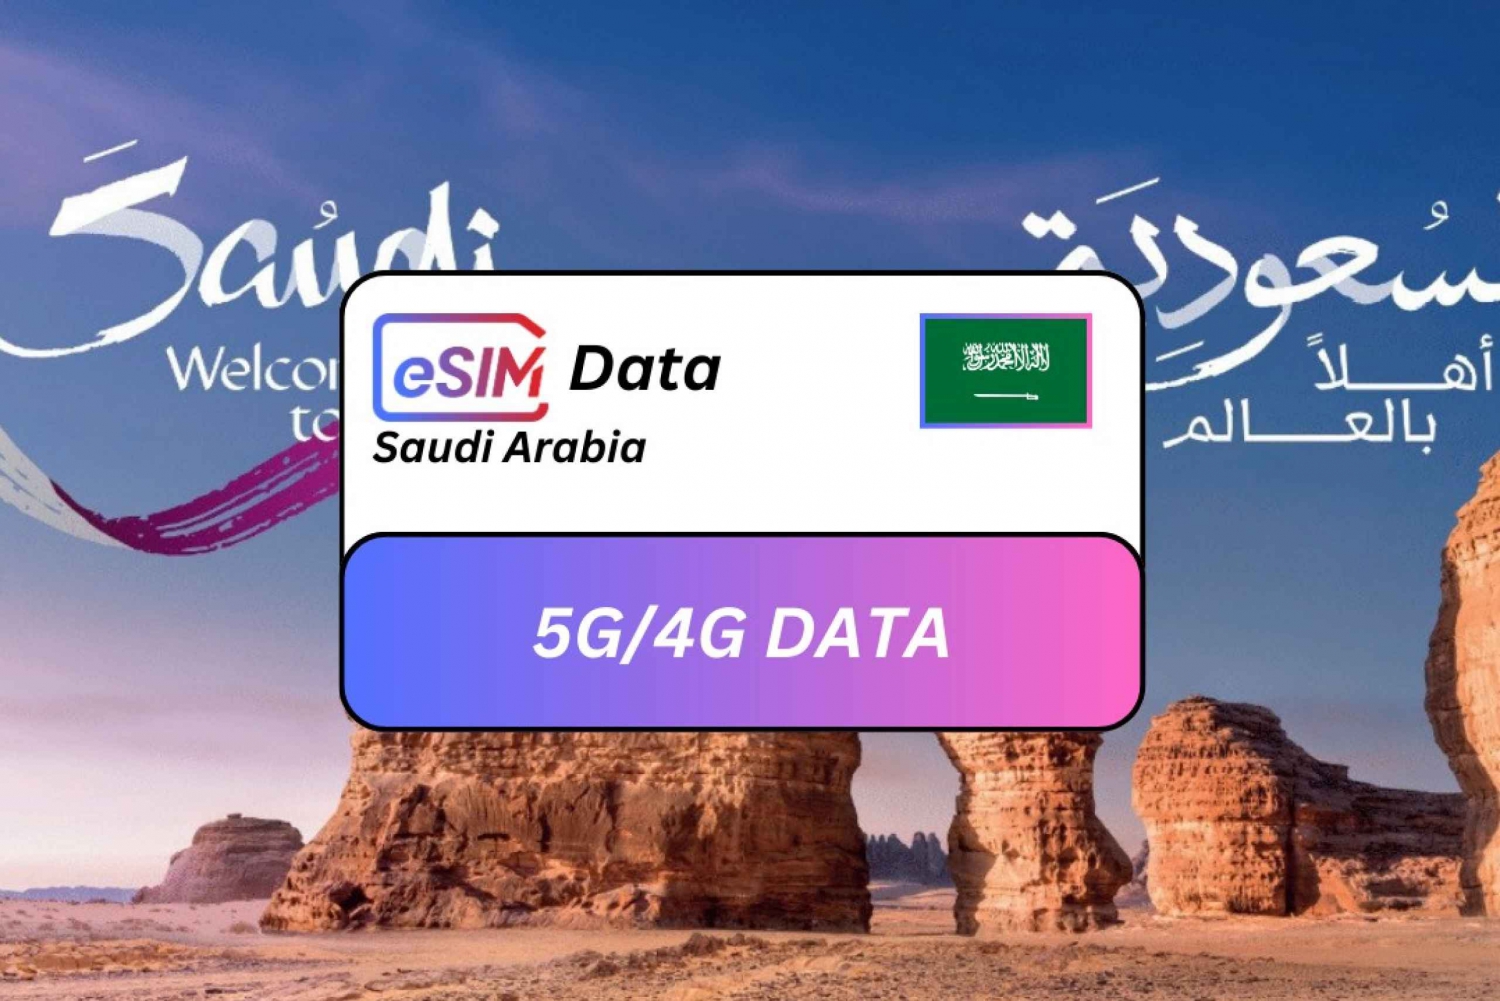 Saudi Arabia eSIM Roaming Data Plan